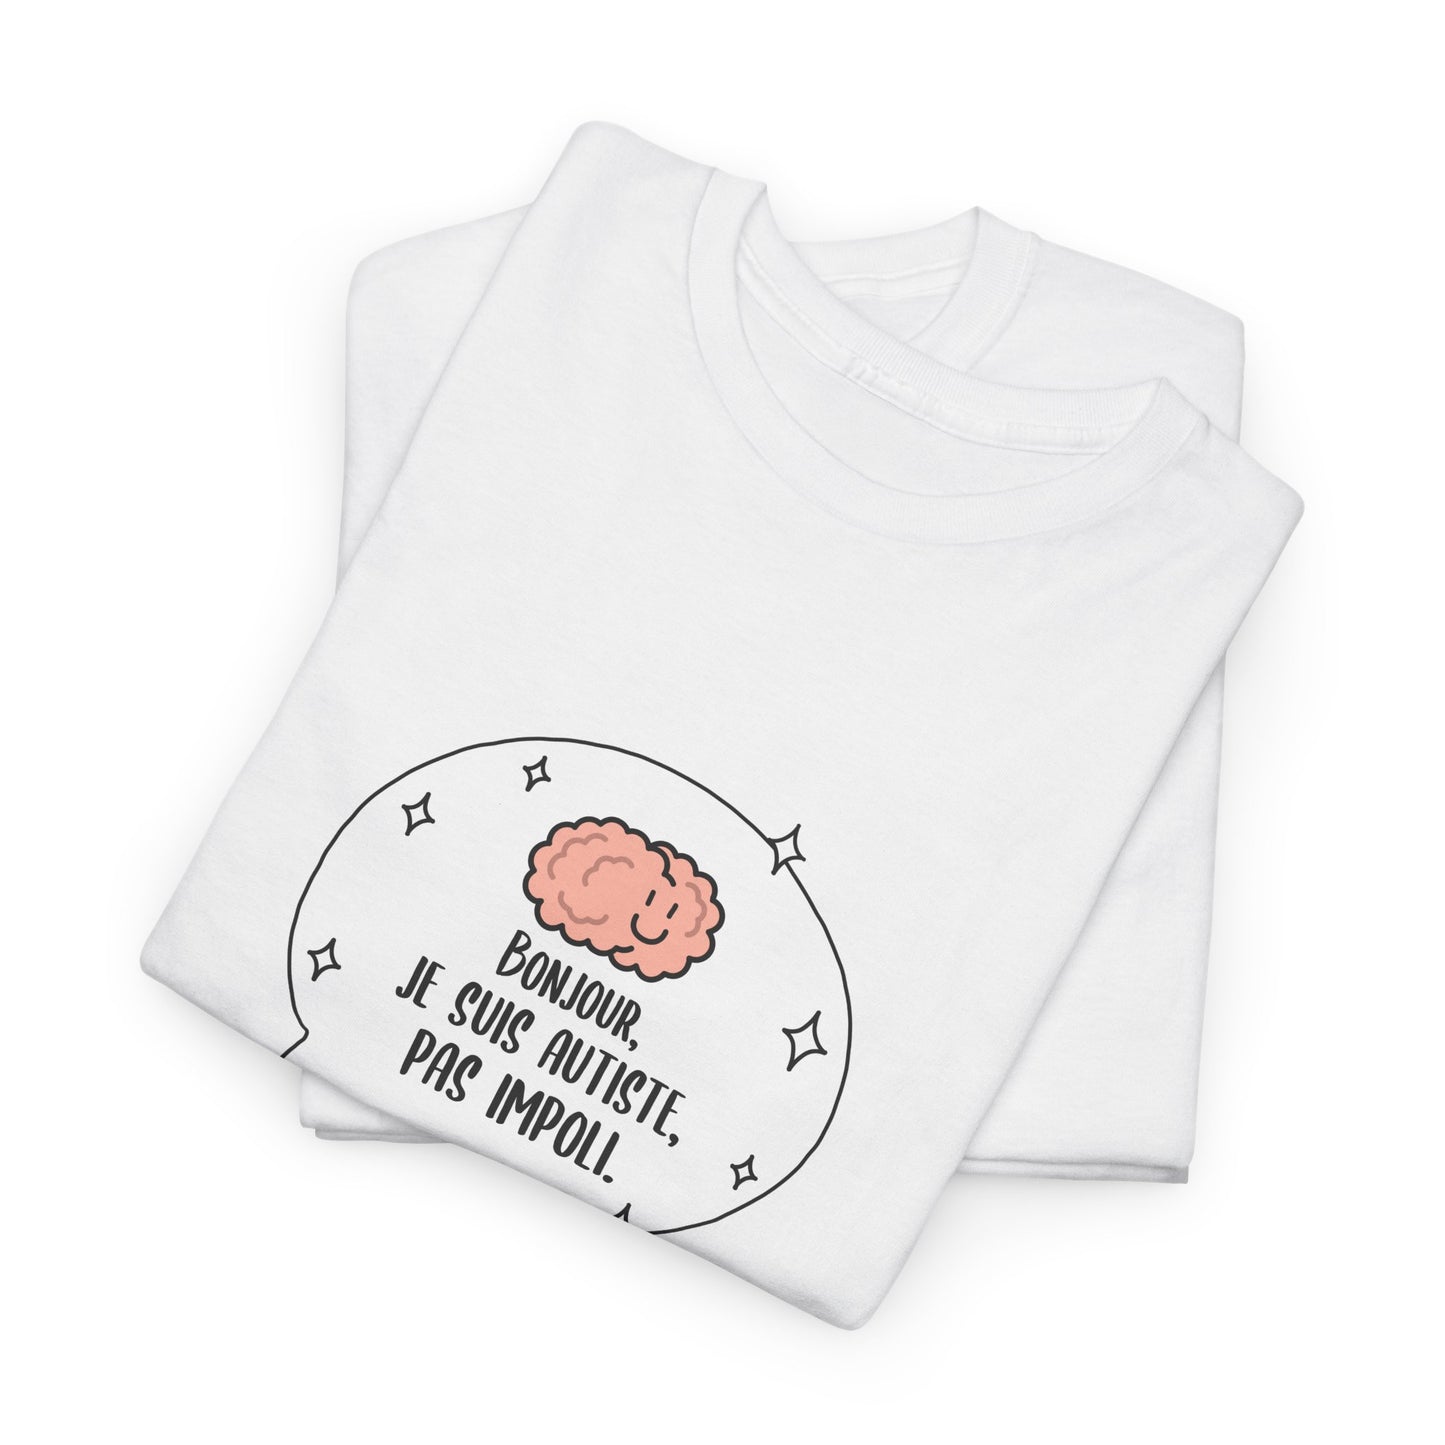 T-shirt à imprimer ''bonjour, je suis autiste, pas impoli.'' pour adulte